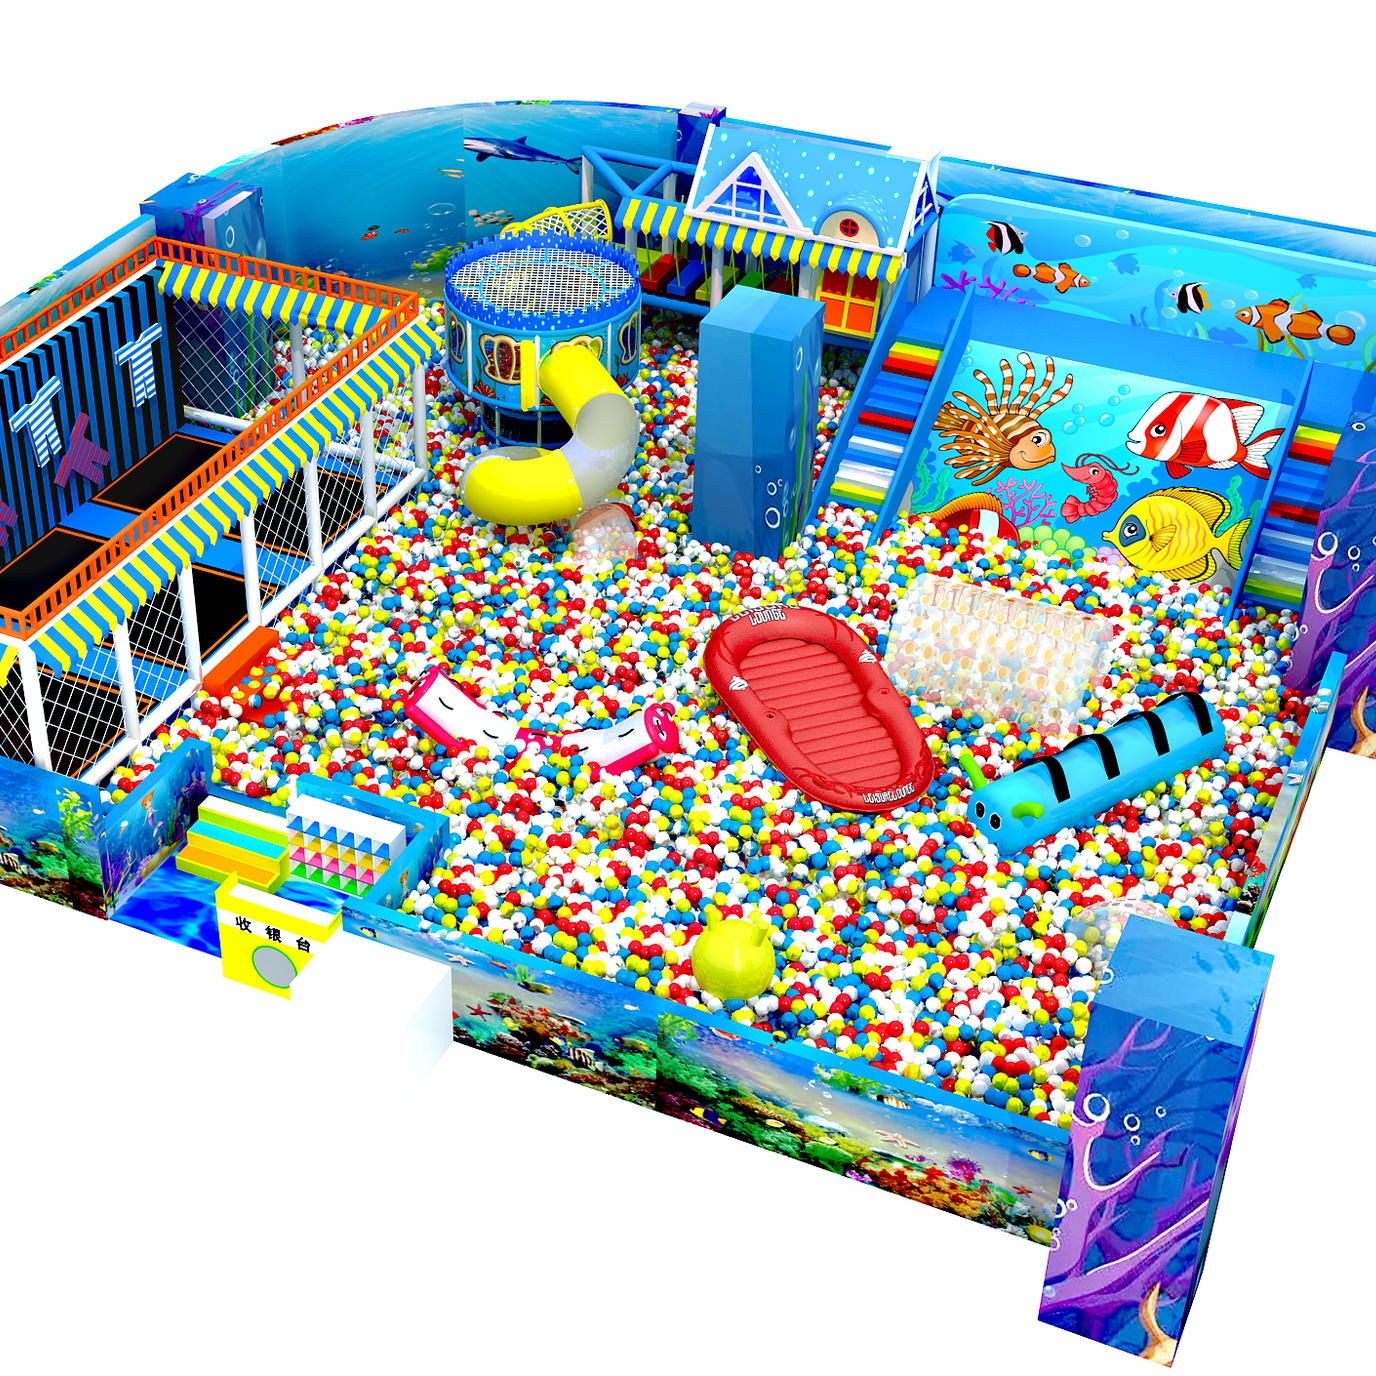 商场大型百万海洋球池   淘气堡室内儿童乐园设备 小 亲子活动  超级蹦床